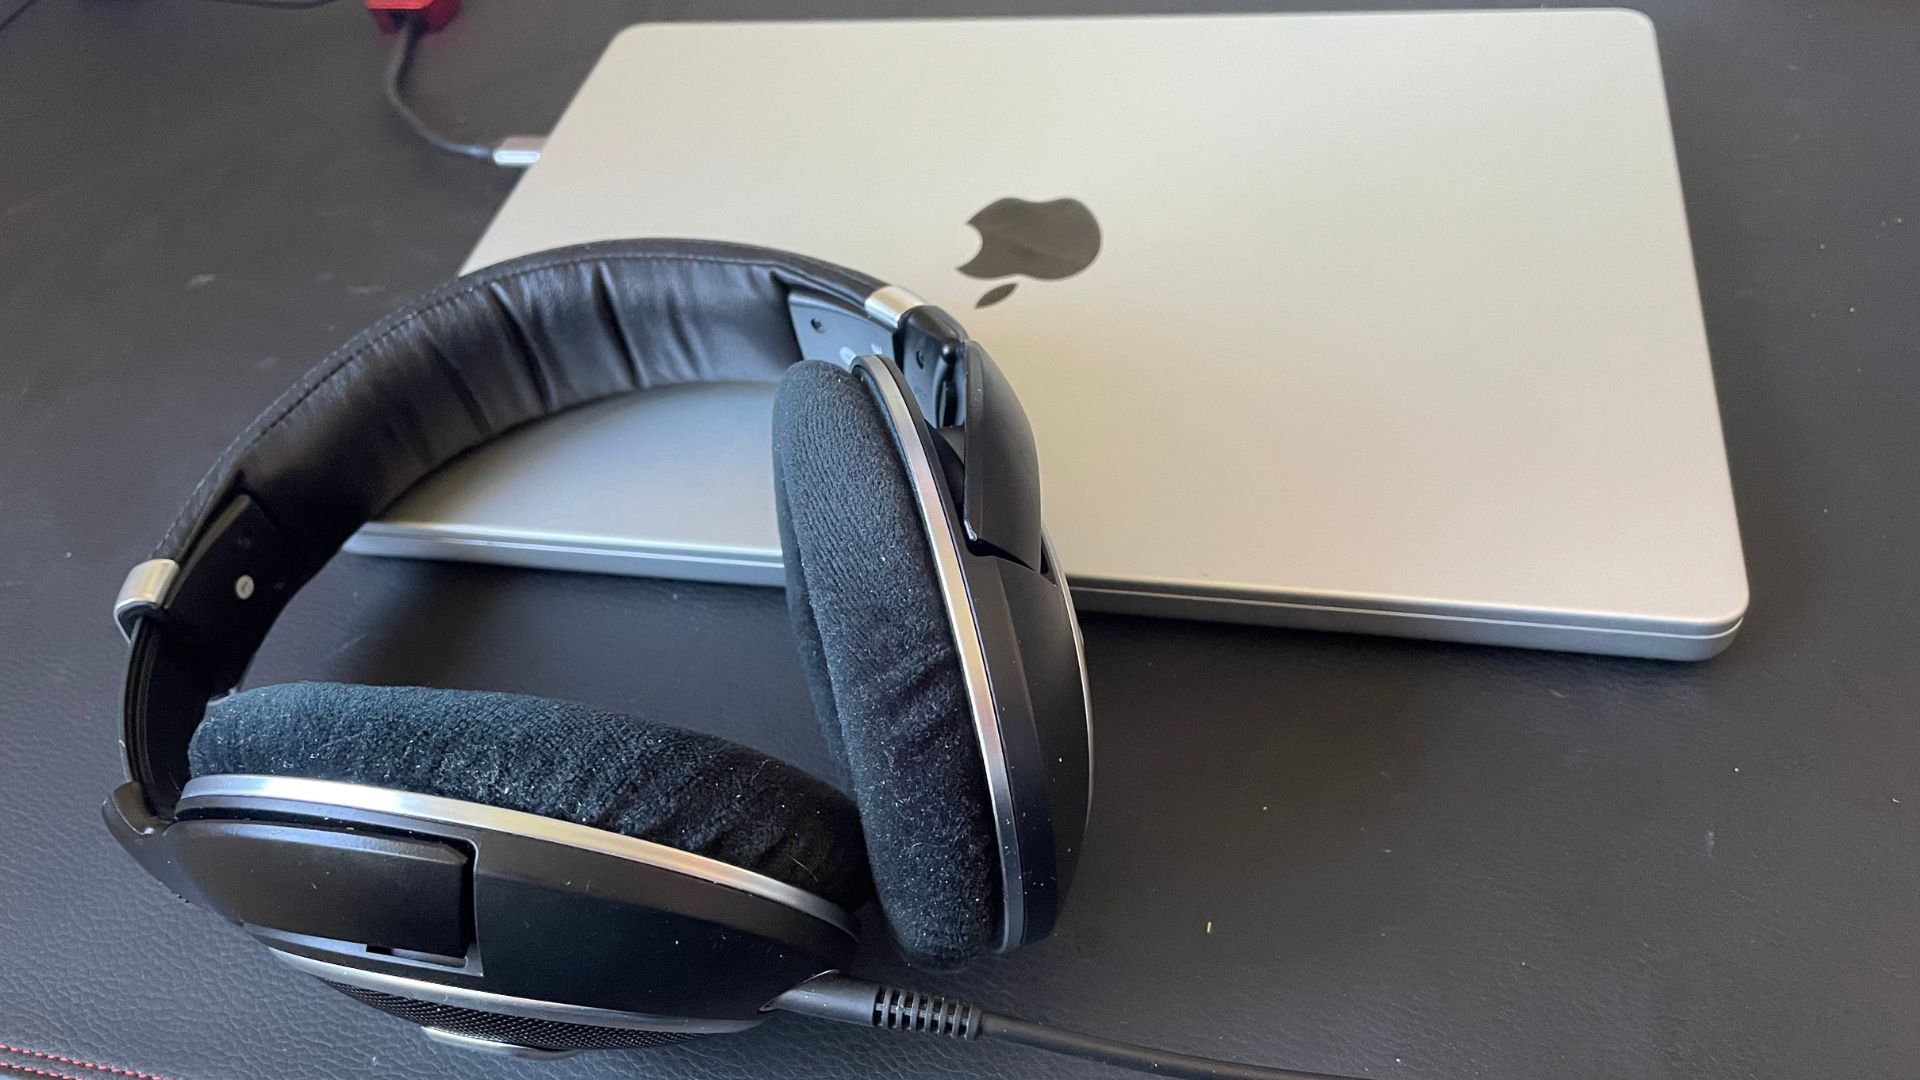 MacBook Pro and headphones